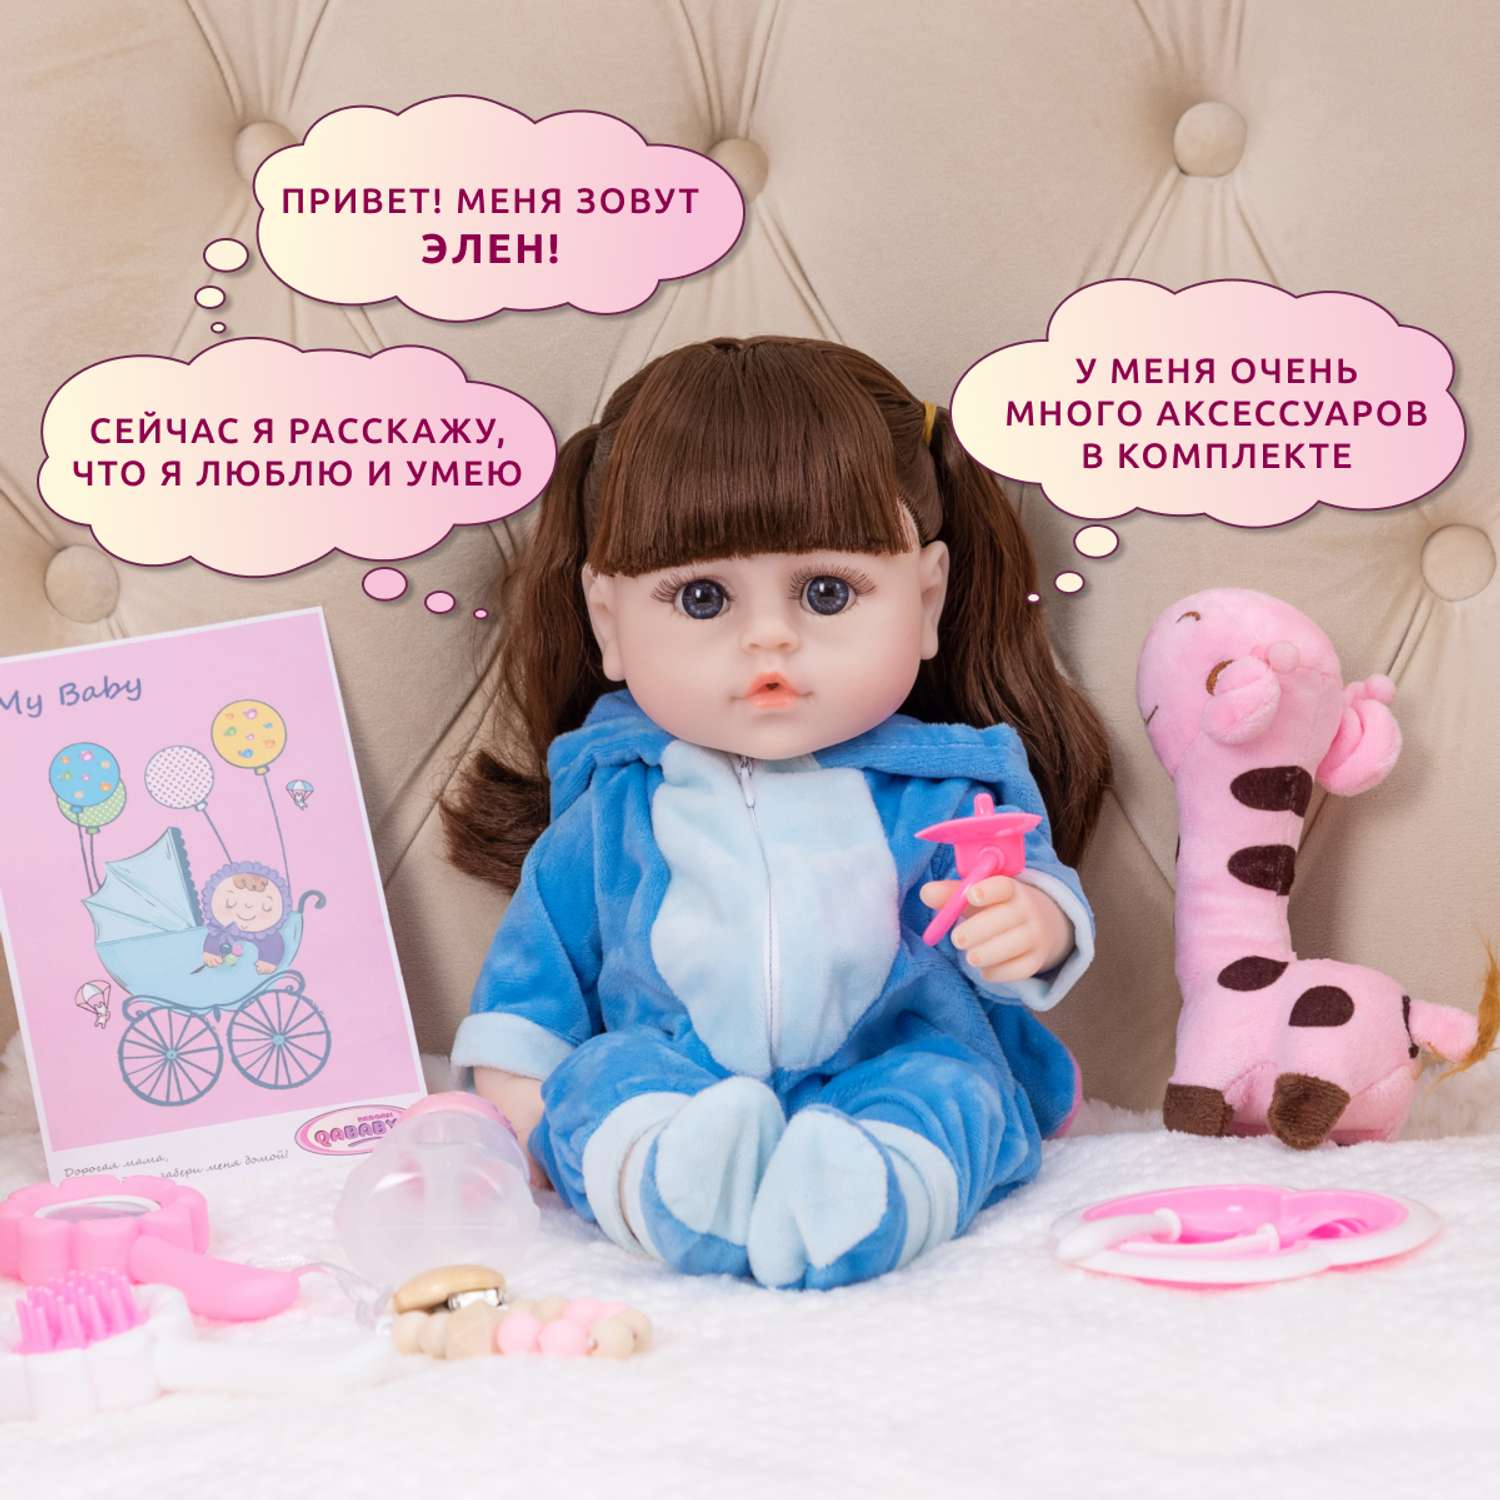 Кукла Реборн QA BABY Кэндис девочка интерактивная Пупс набор игрушки для ванной для девочки 38 см 3811 - фото 2